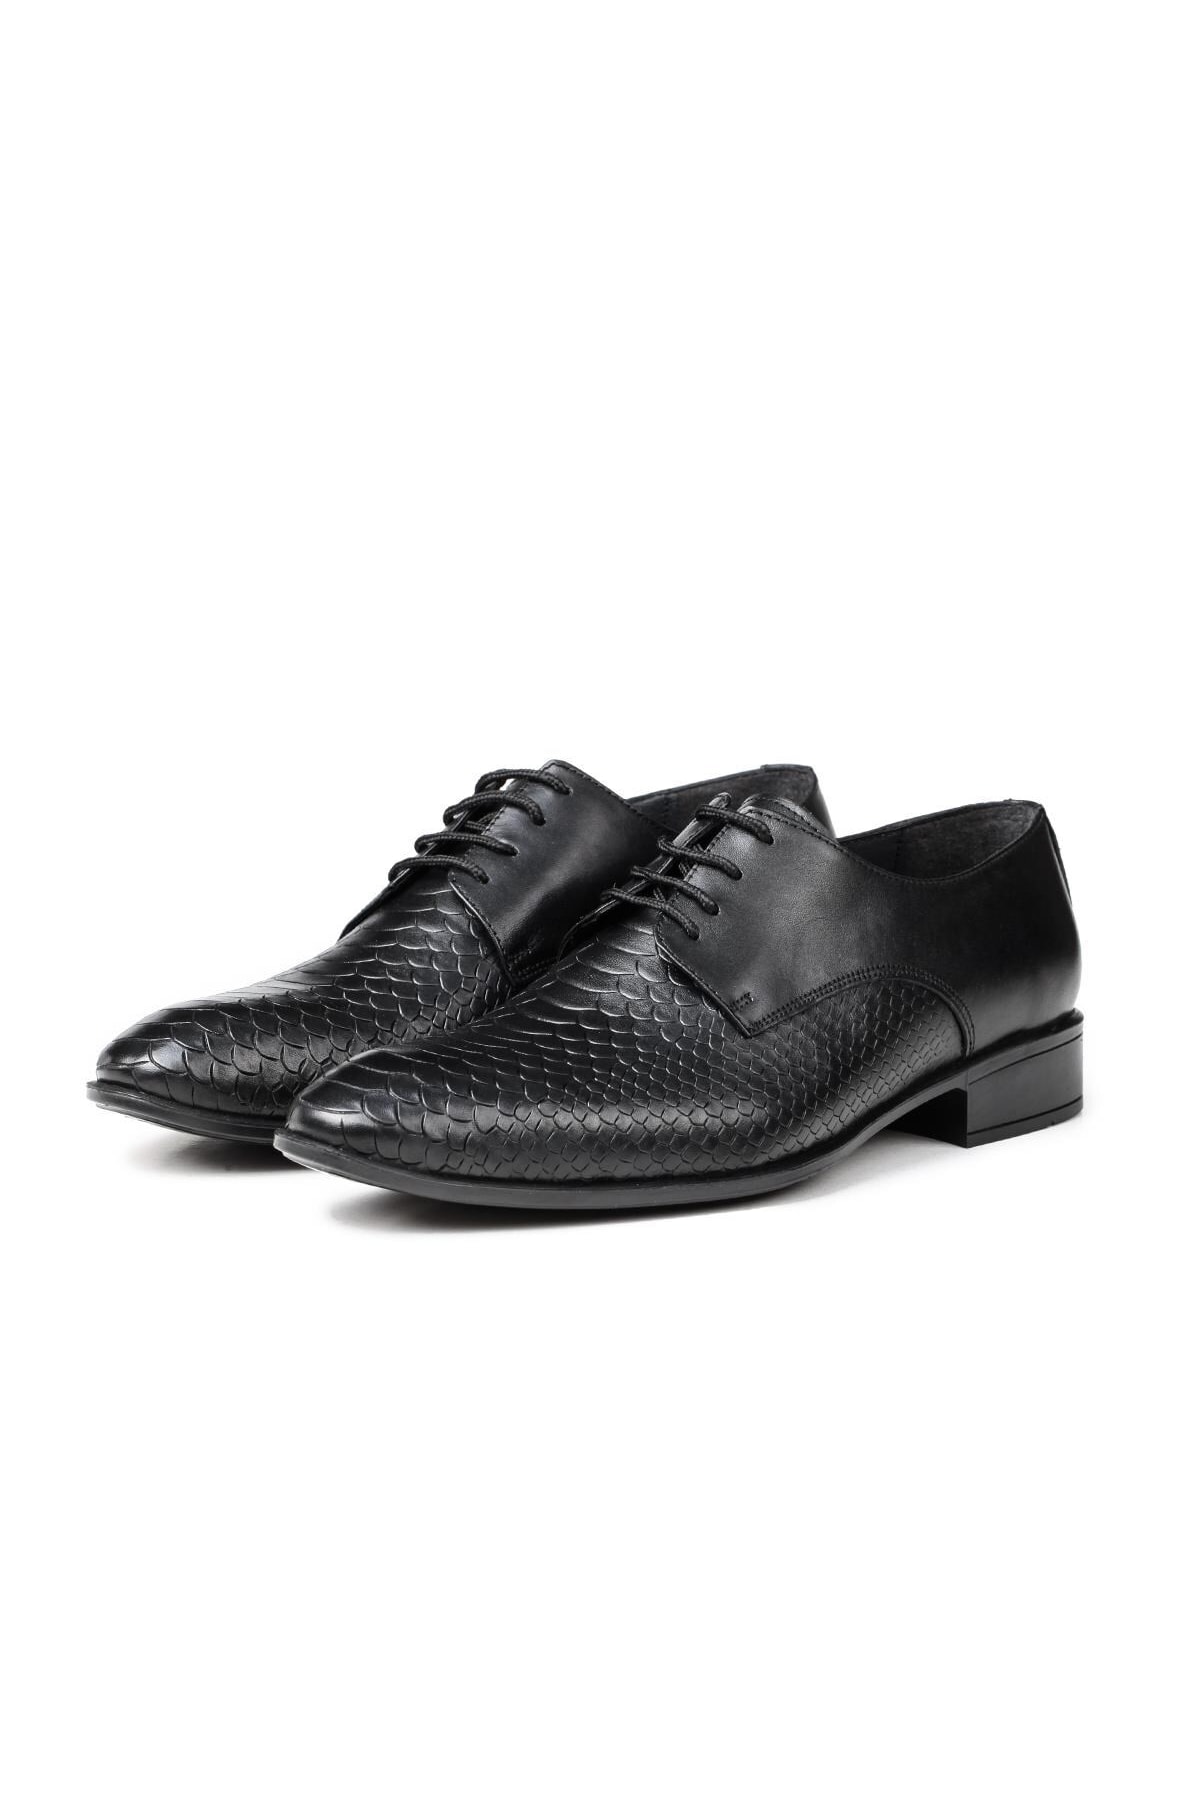 Levně Ducavelli Croco Genuine Leather Men's Classic Shoes, Derby Classic Shoes, Lace-Up Classic Shoes.